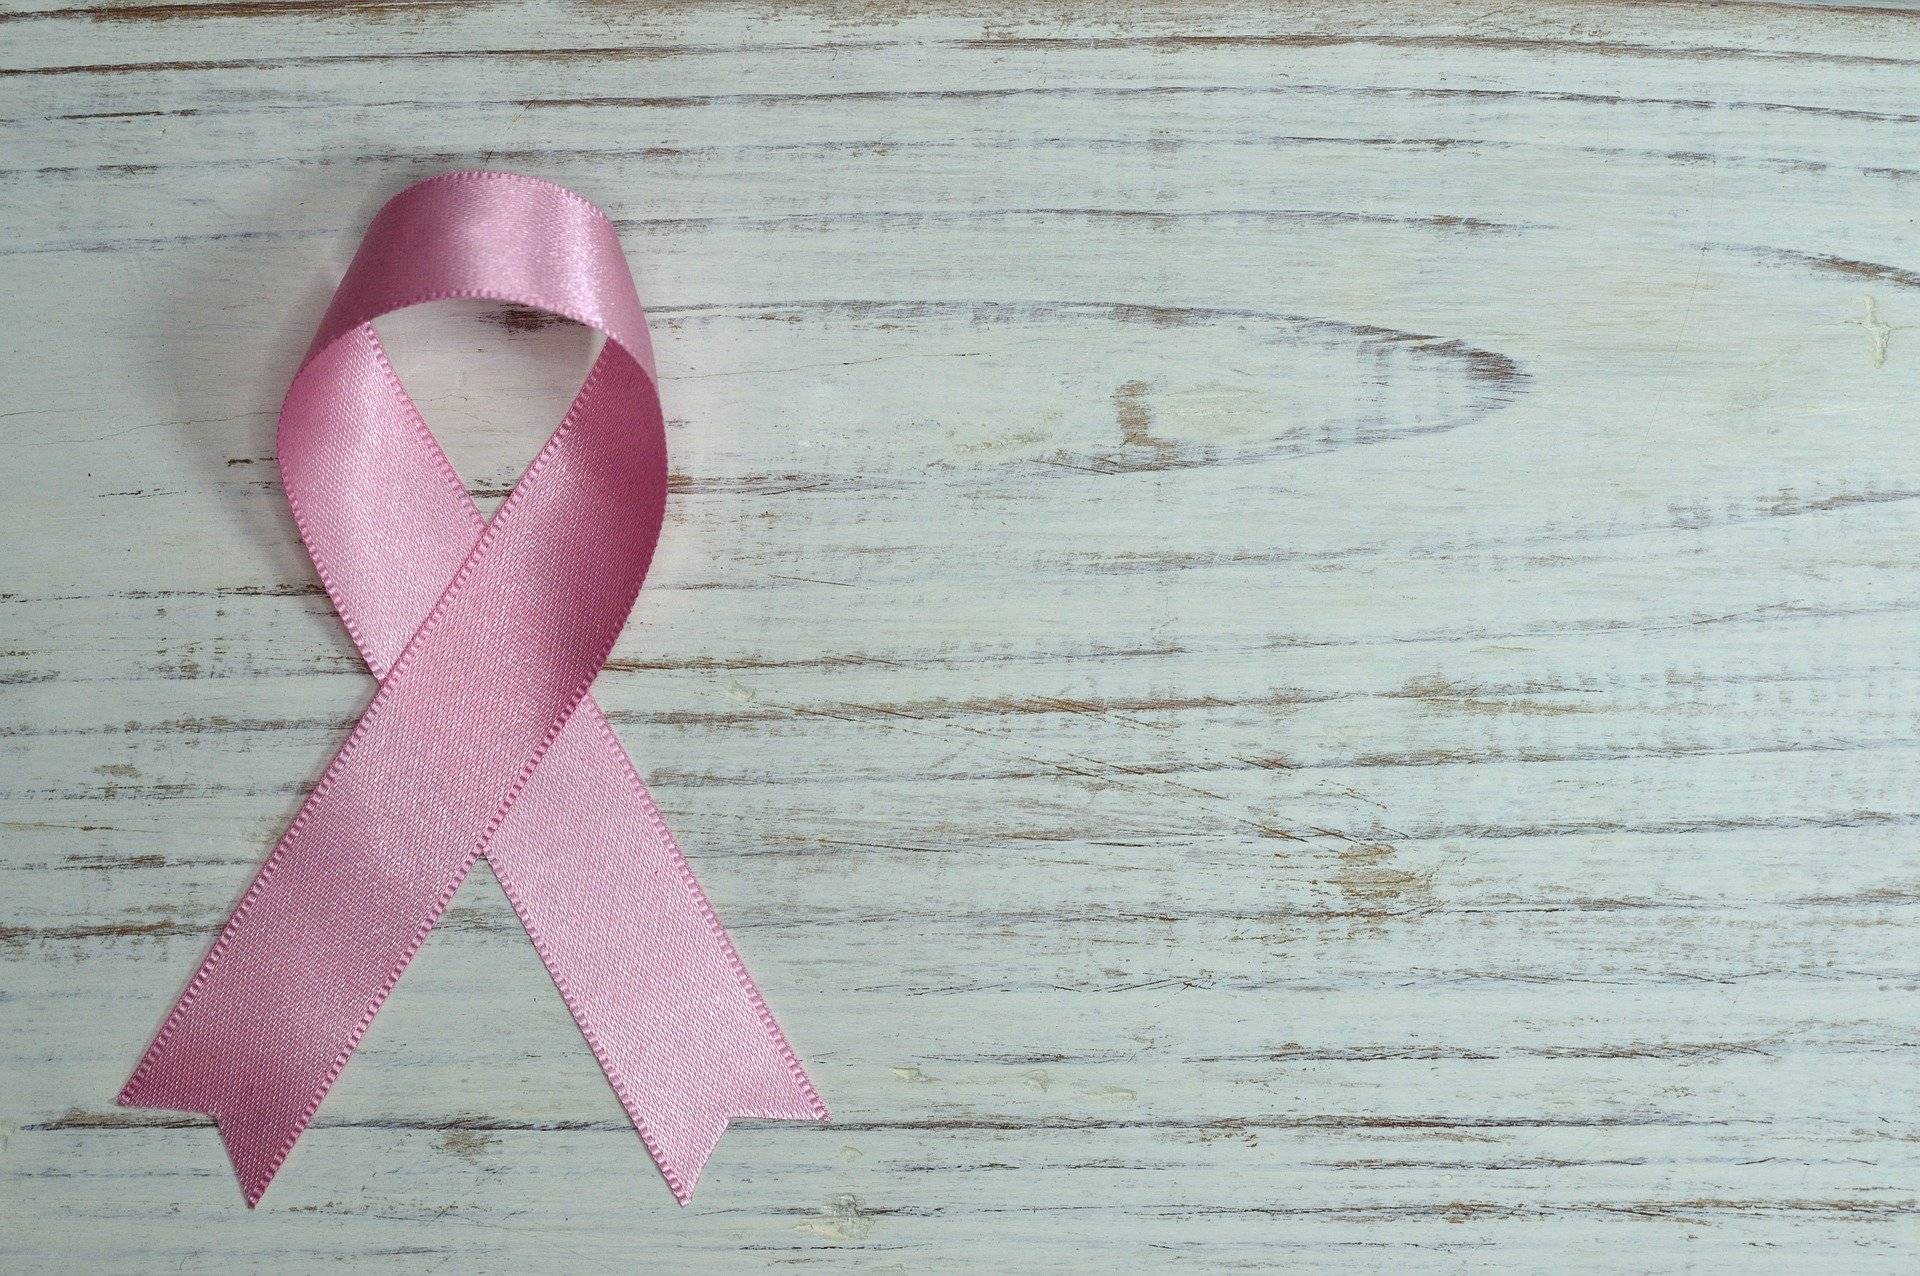  Die Rosa Schleife ist ein internationales Symbol, mit dem auf die Brustkrebserkrankung hingewiesen wird.  